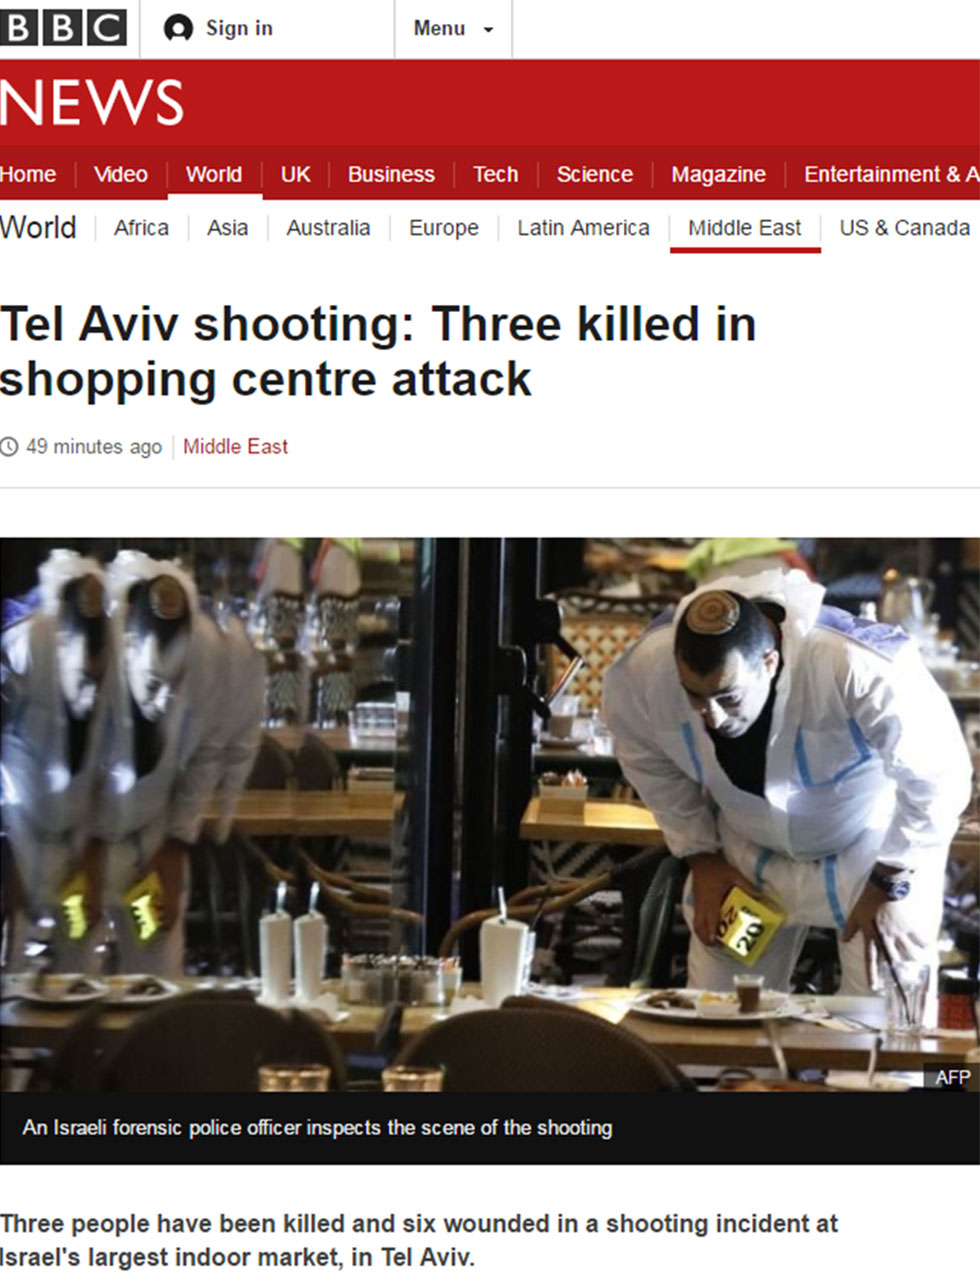 BBC coverage of Tel Aviv terror attack